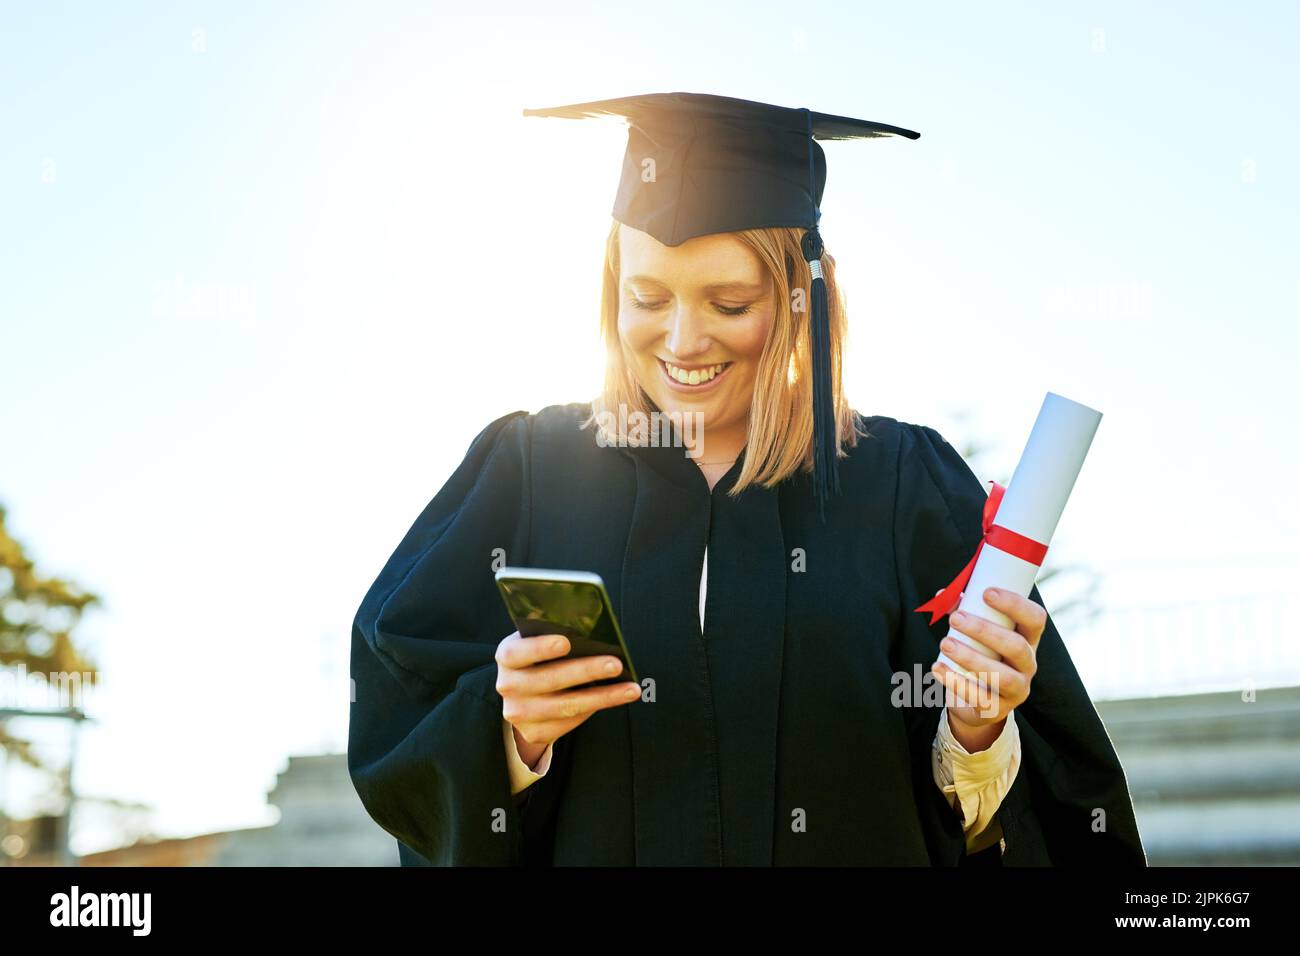 Der schnellste Weg, um allen von ihrem großen Tag zu erzählen. Studentin benutzt ihr Handy am Abschlusstag. Stockfoto